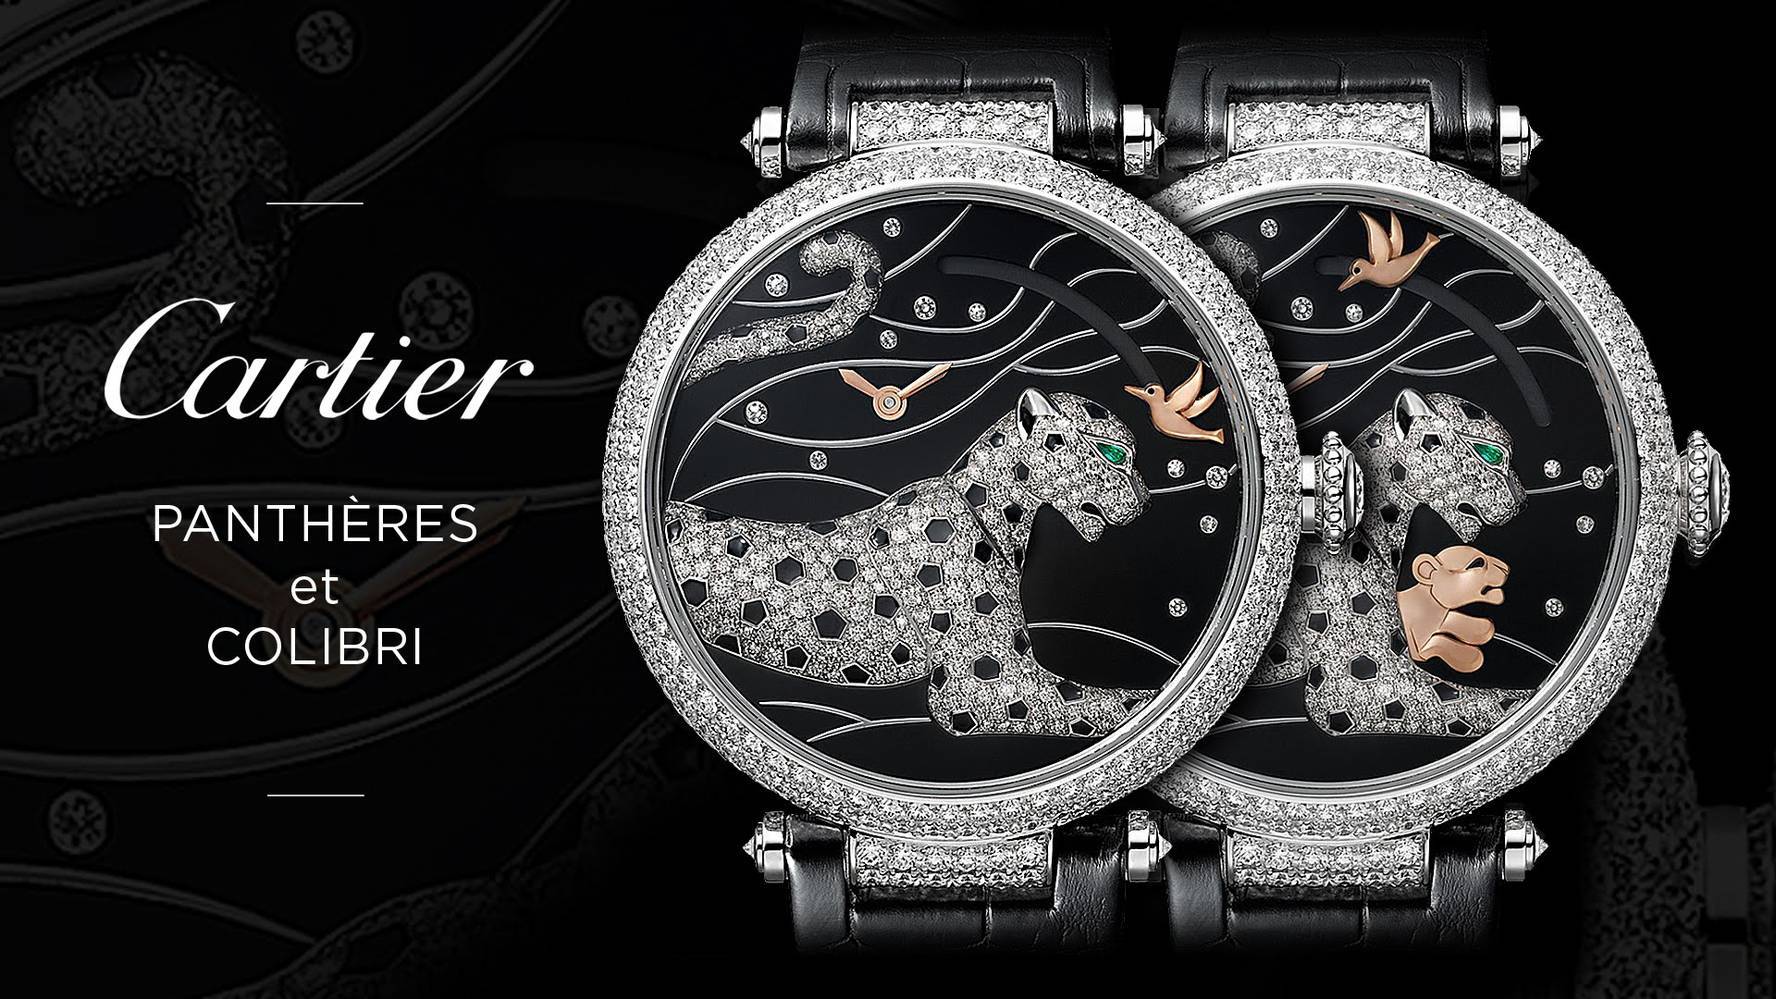 đồng hồ Cartier đính đá mẫu Panthères et Colibri